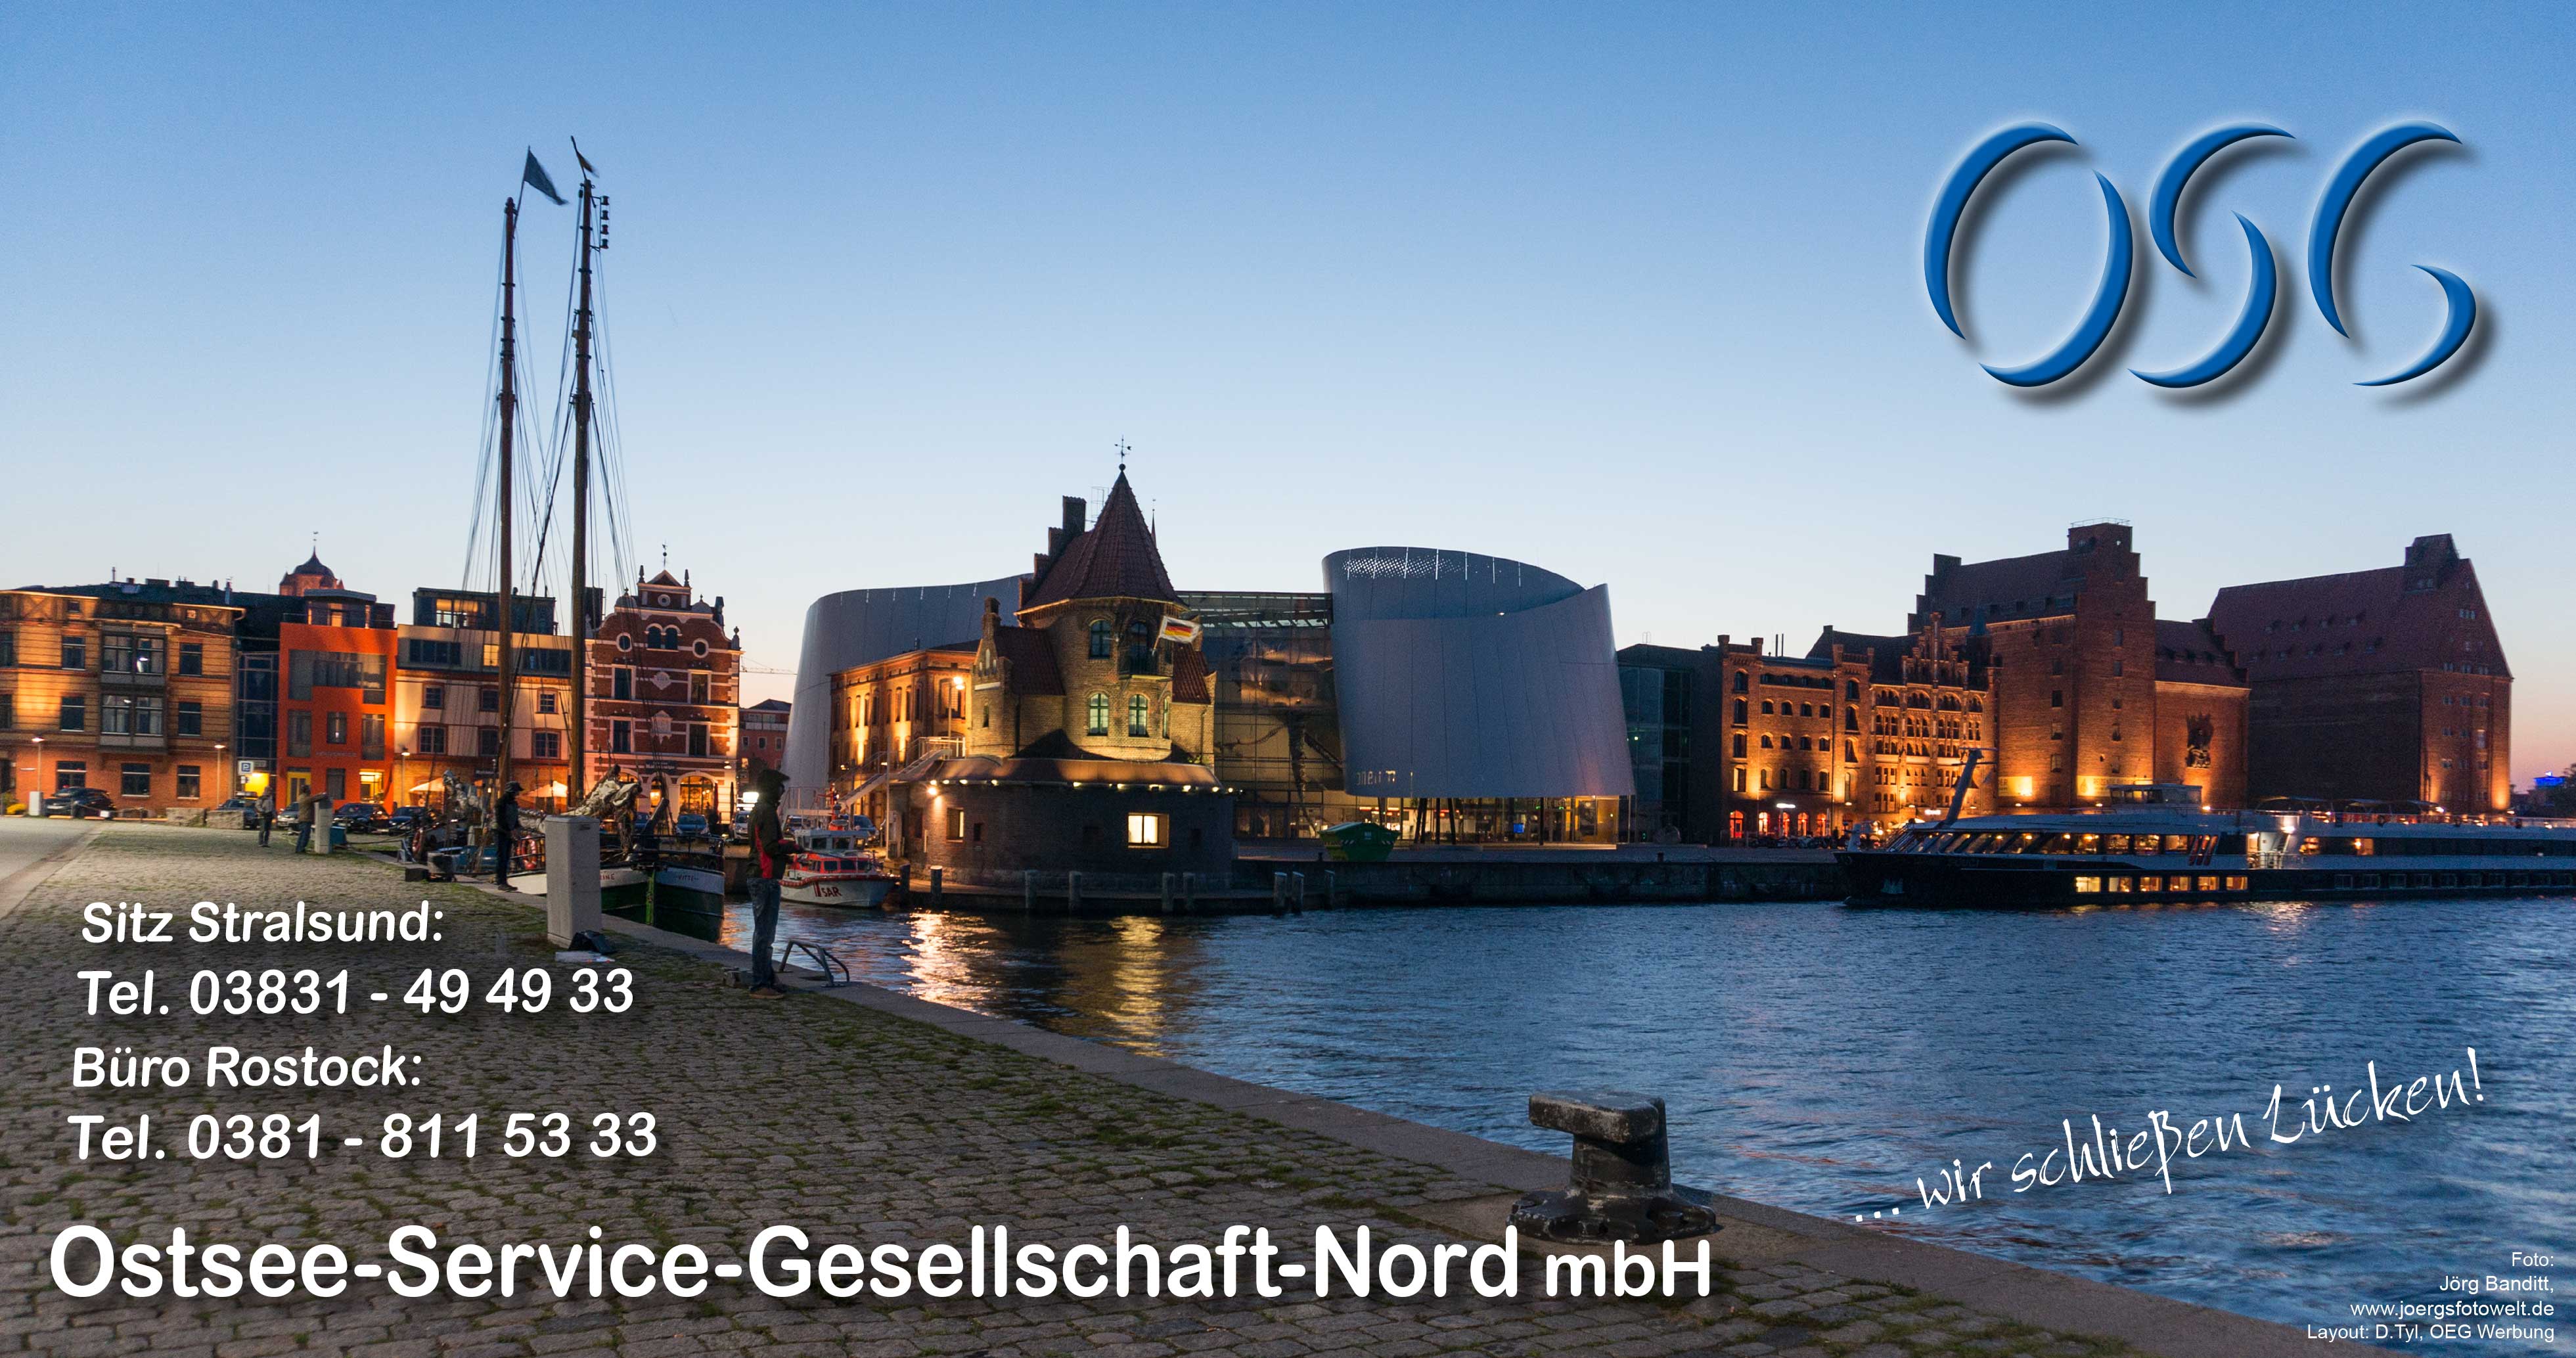 Titelfoto zum Kalender 2016 der Ostsee-Service-Gesellschaft-Nord mbH in Stralsund